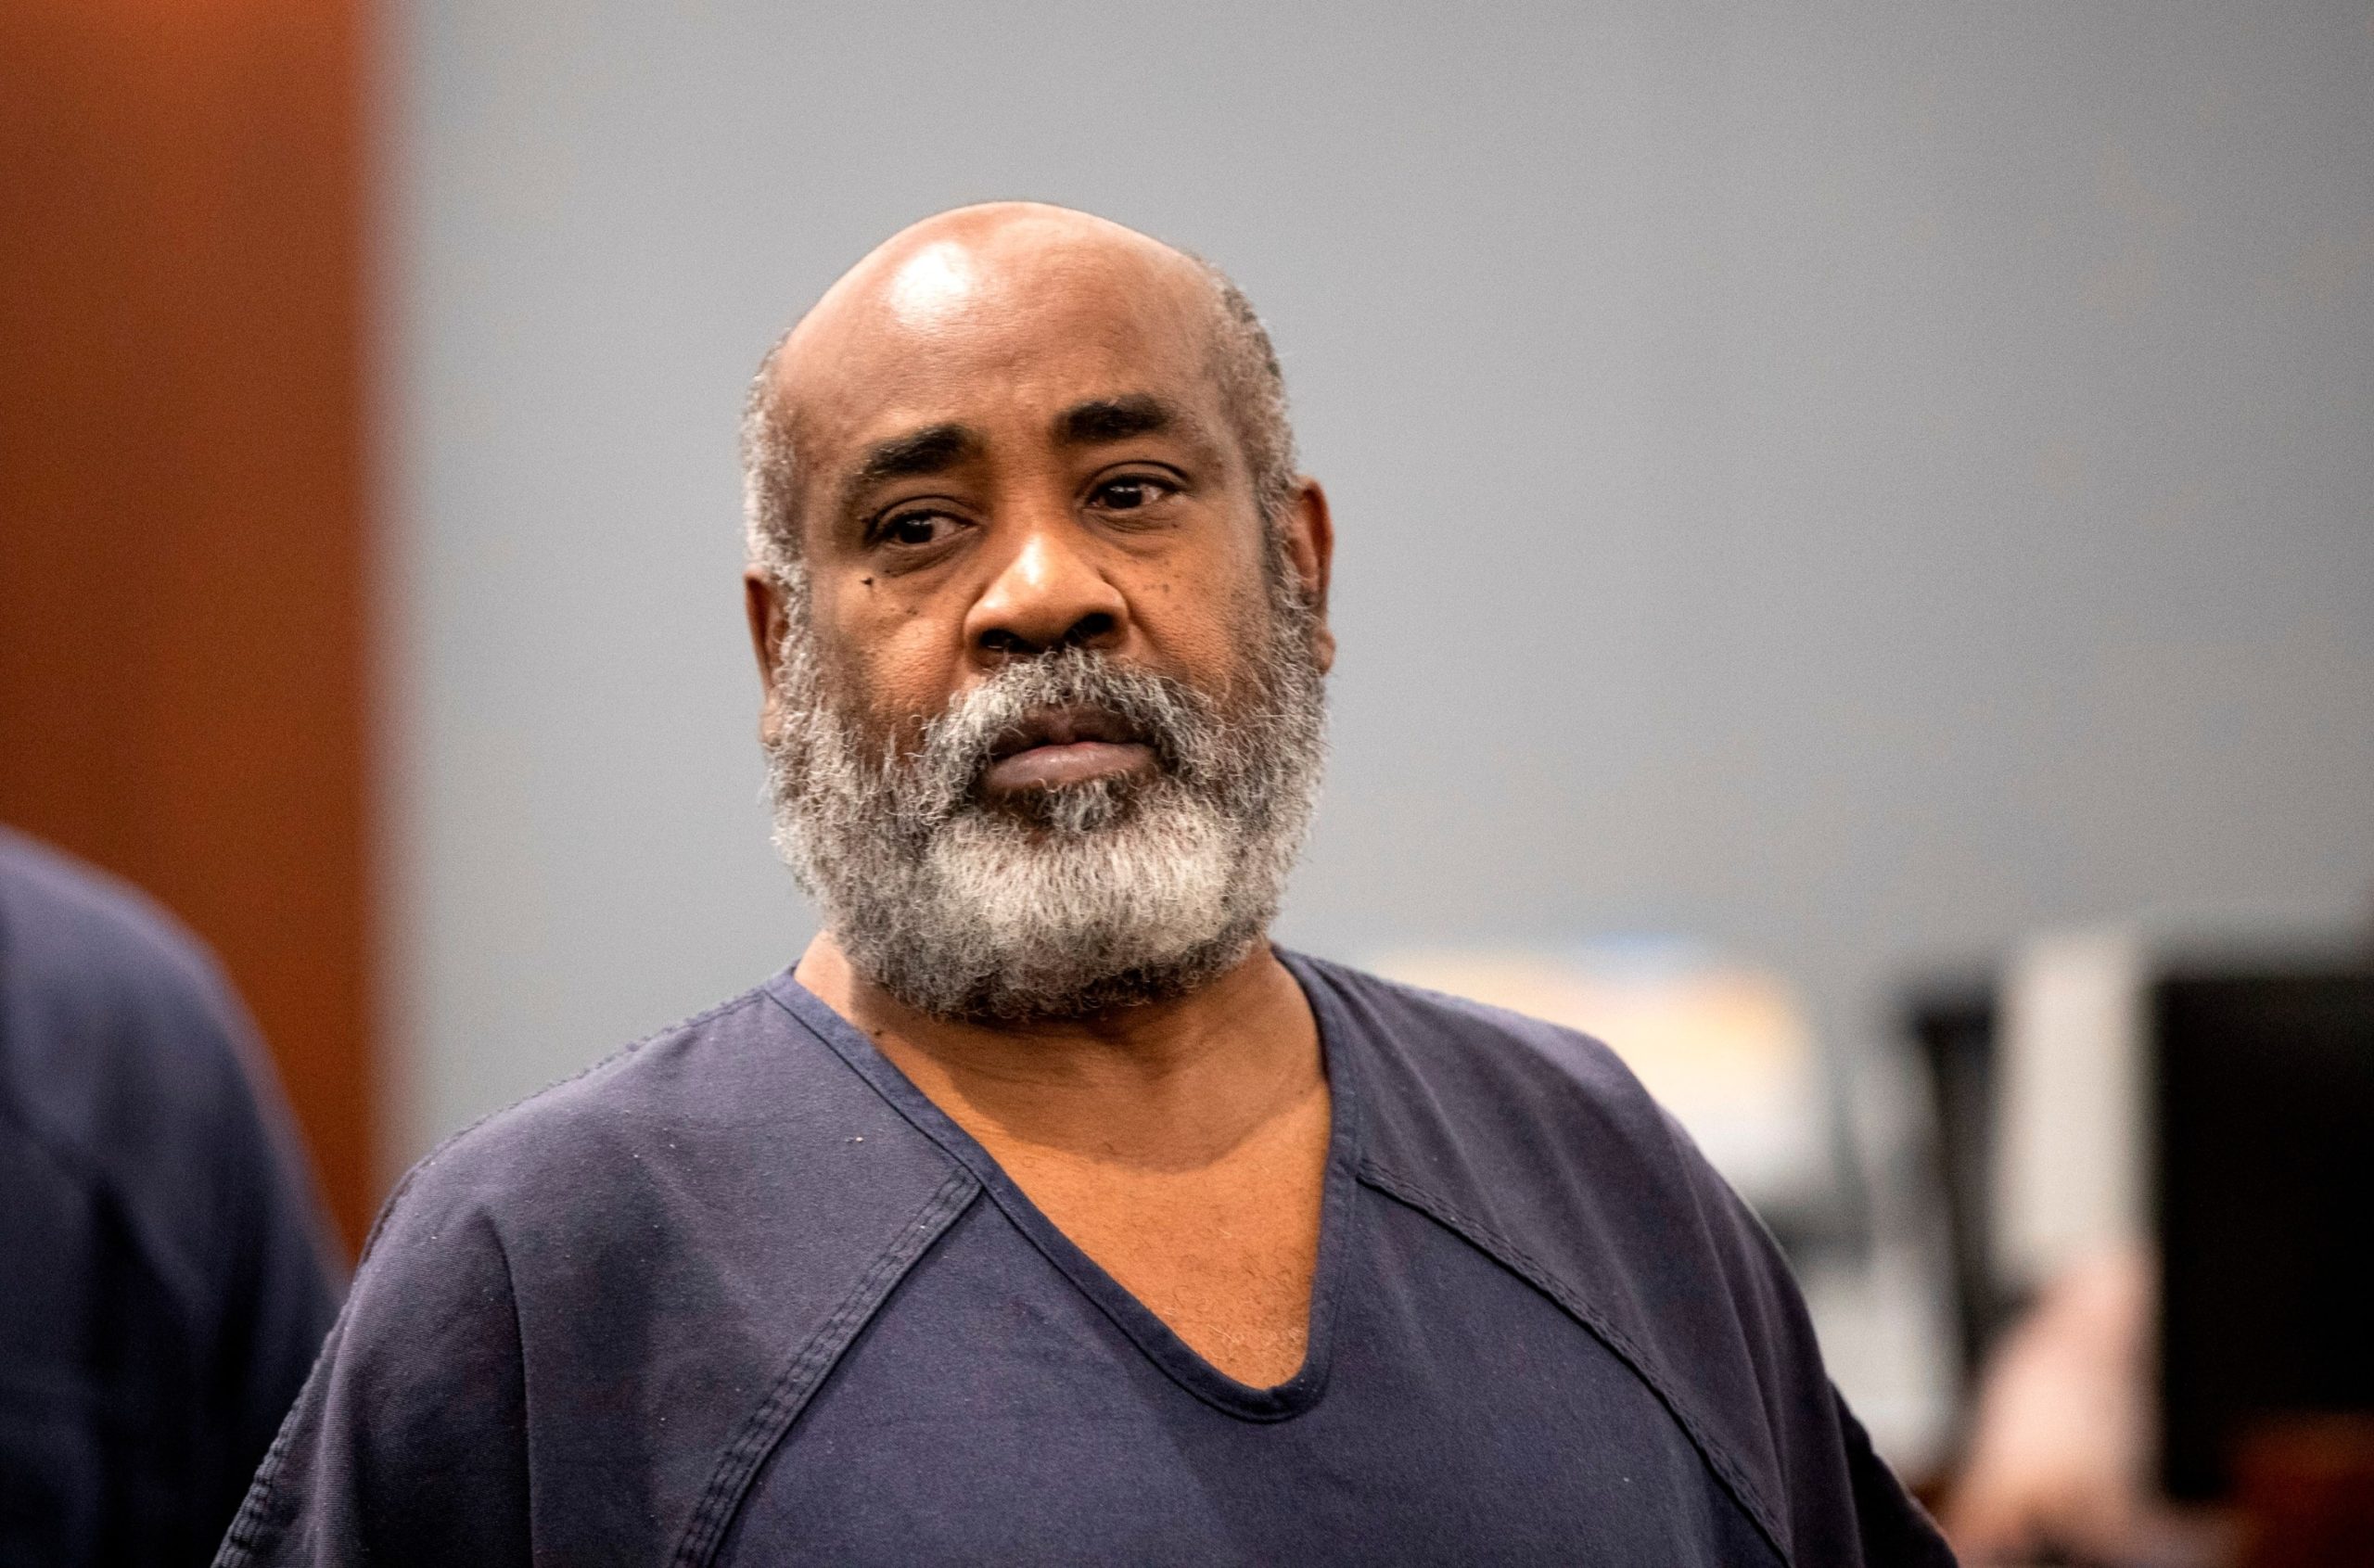 Audio Recording Reveals Jailhouse Call of Suspect in Tupac Shakur Murder Case